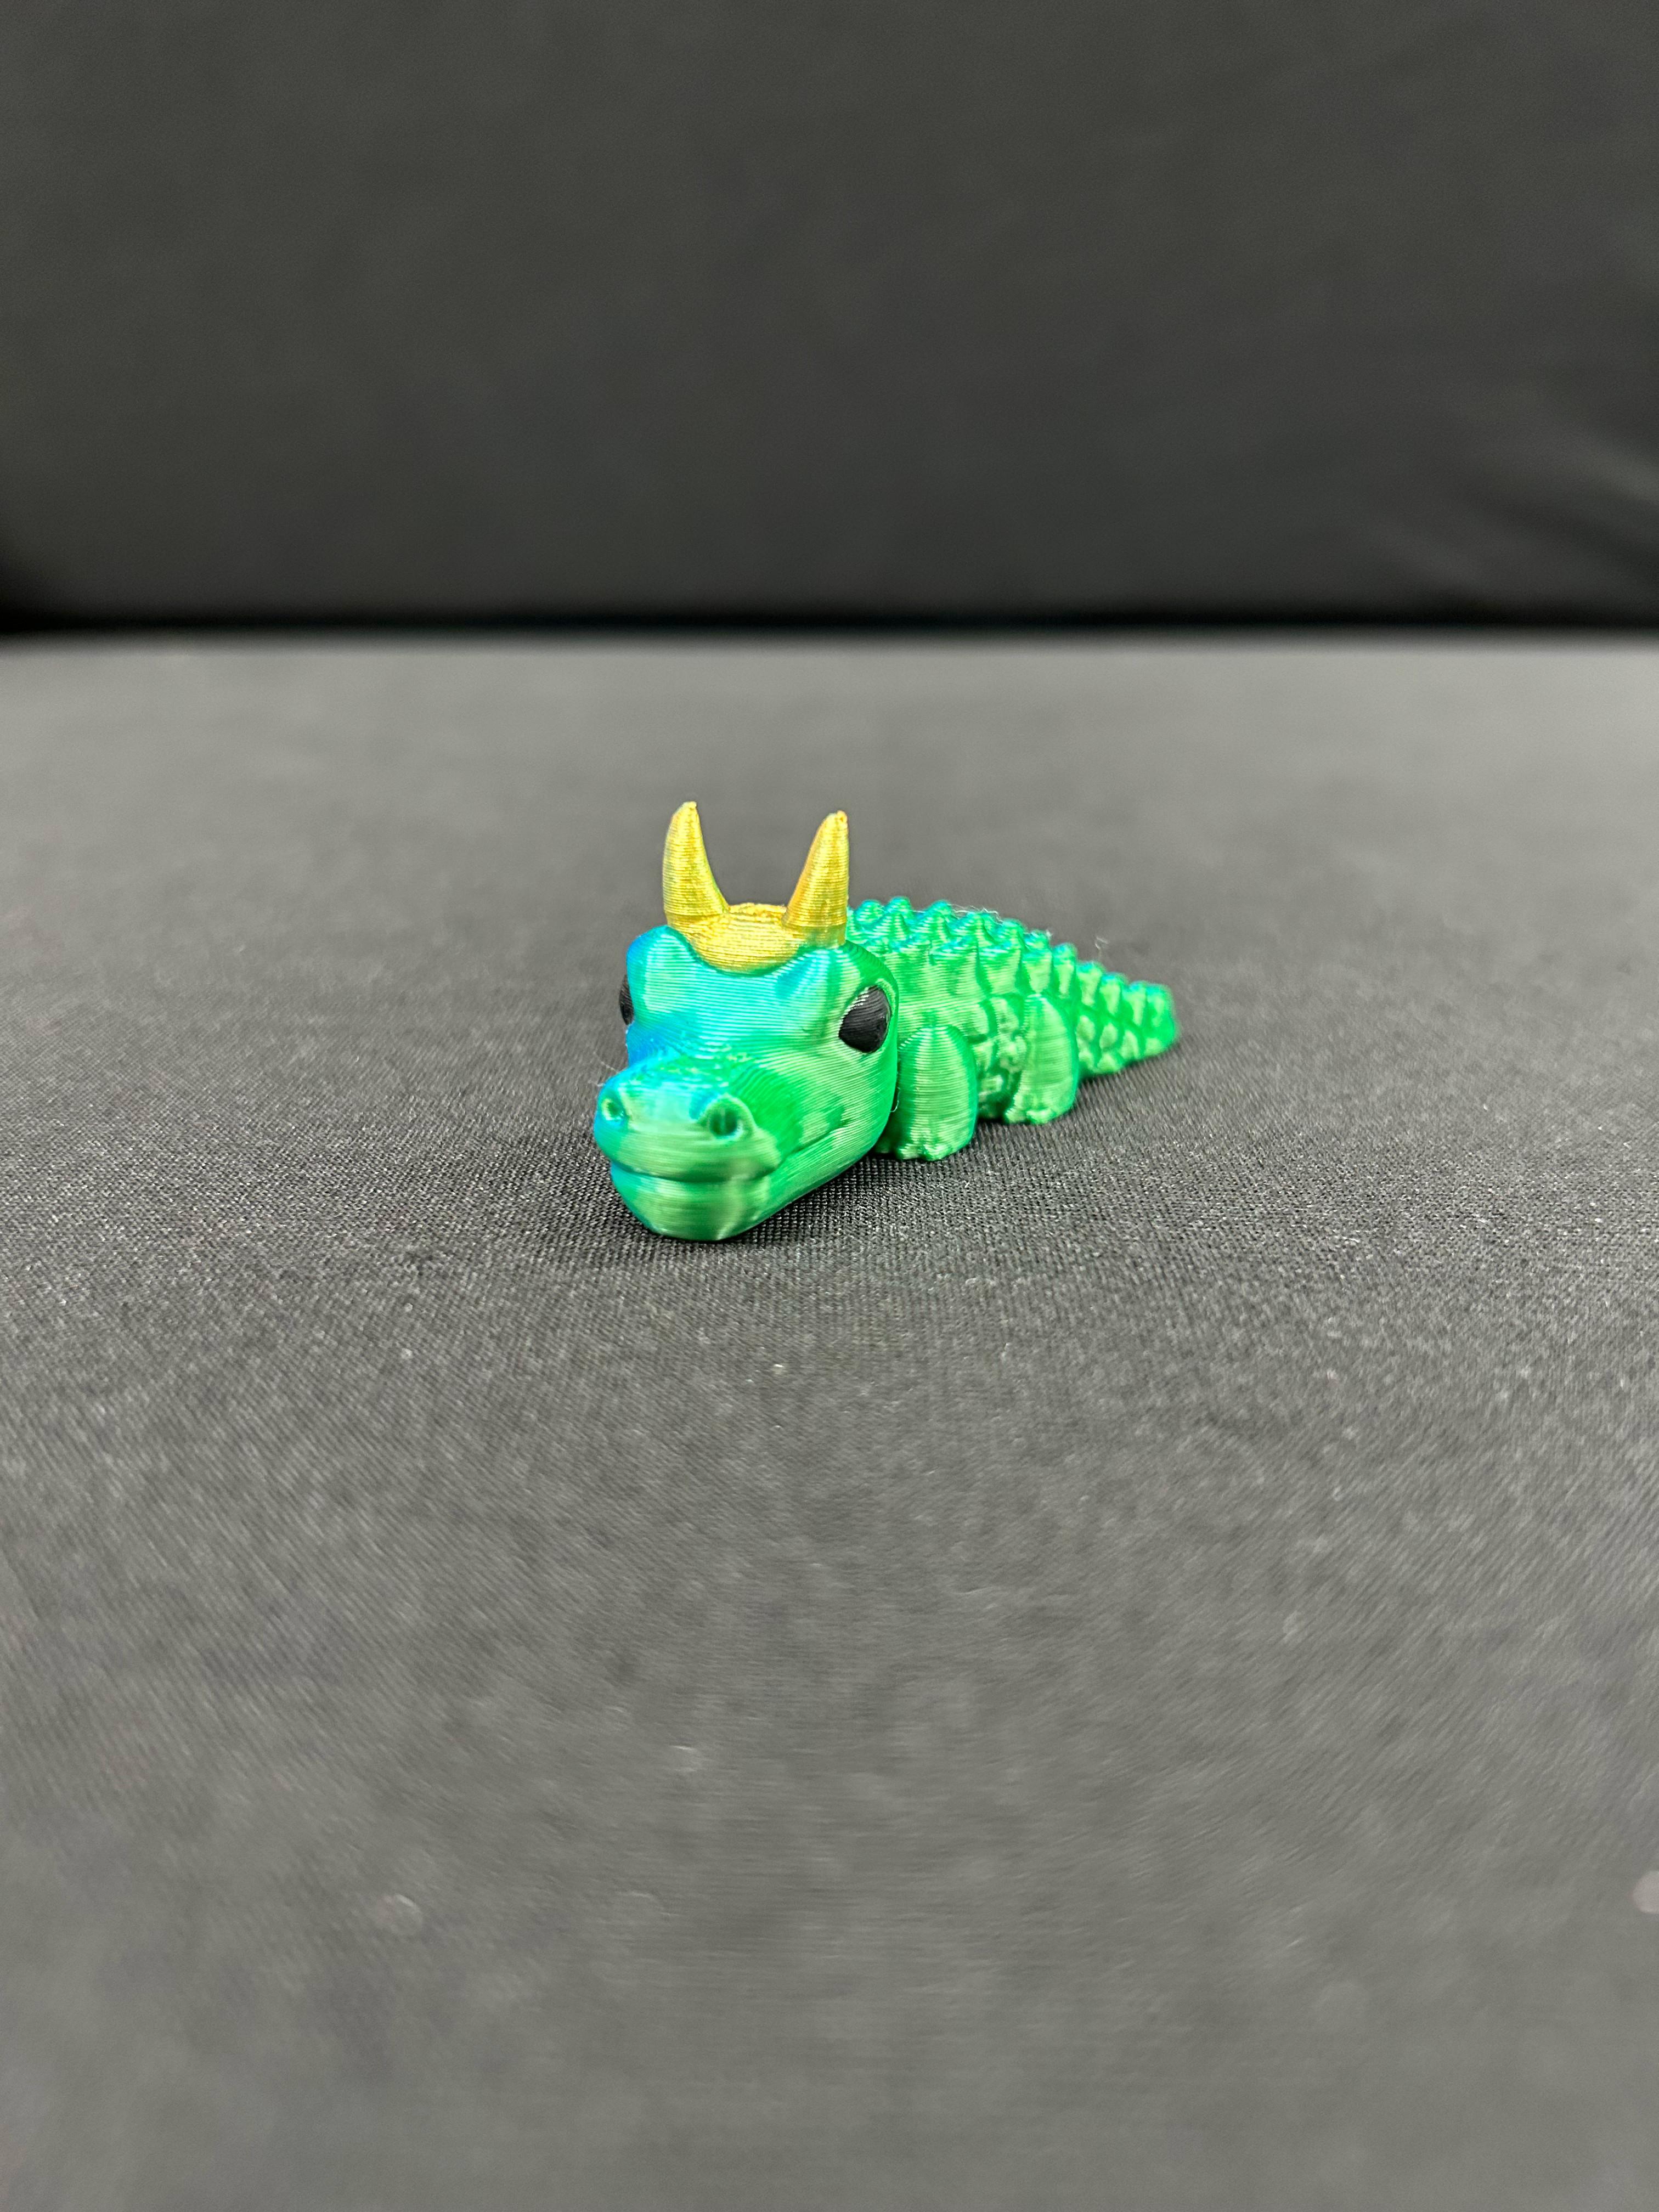 Alligator with horned crown 3d model